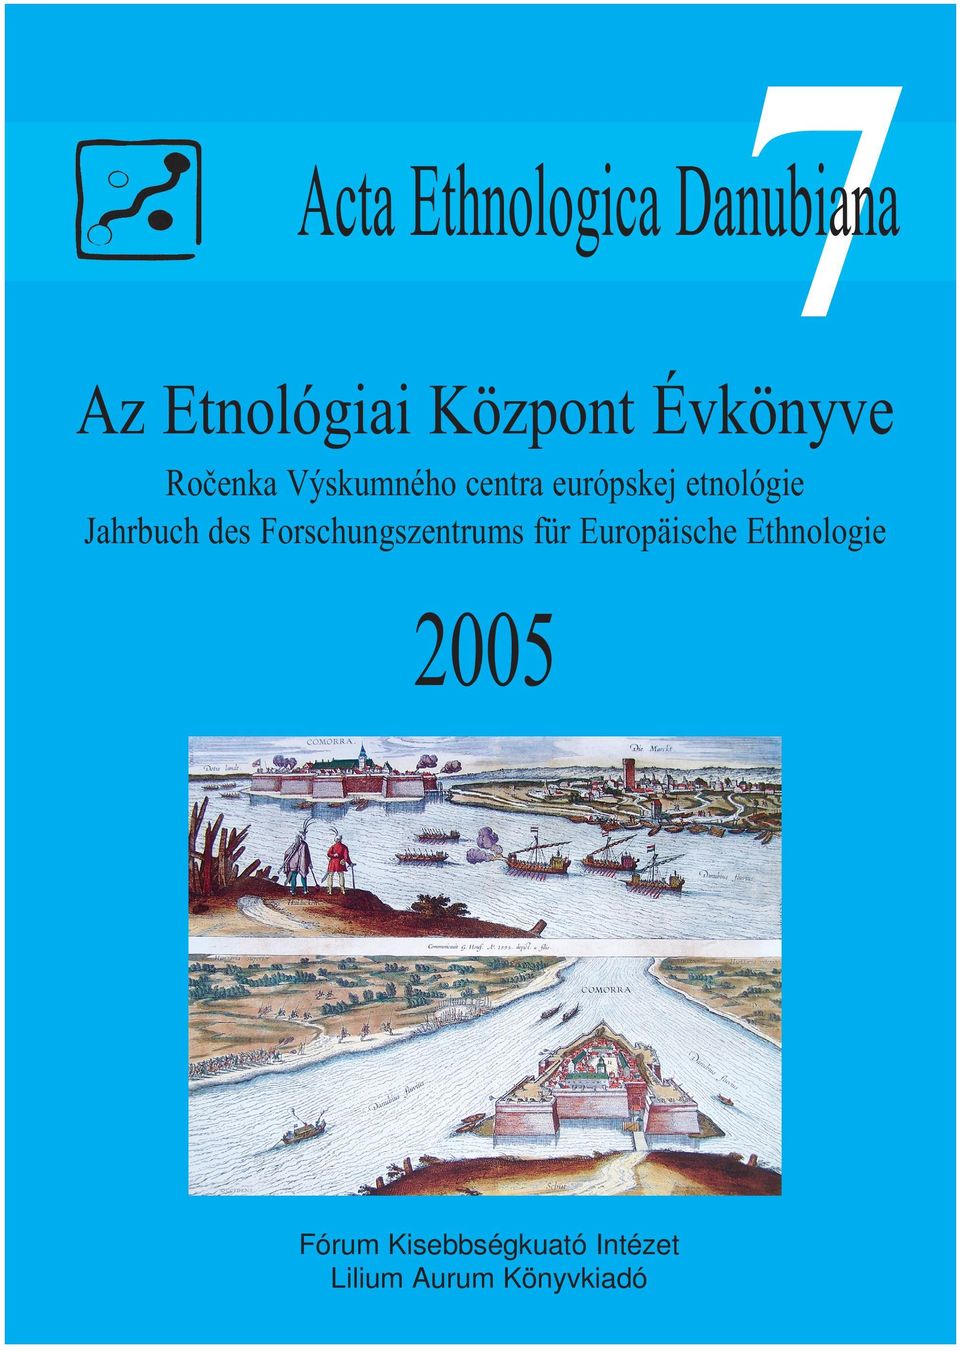 Jahrbuch des orschungszentrums für Europäische